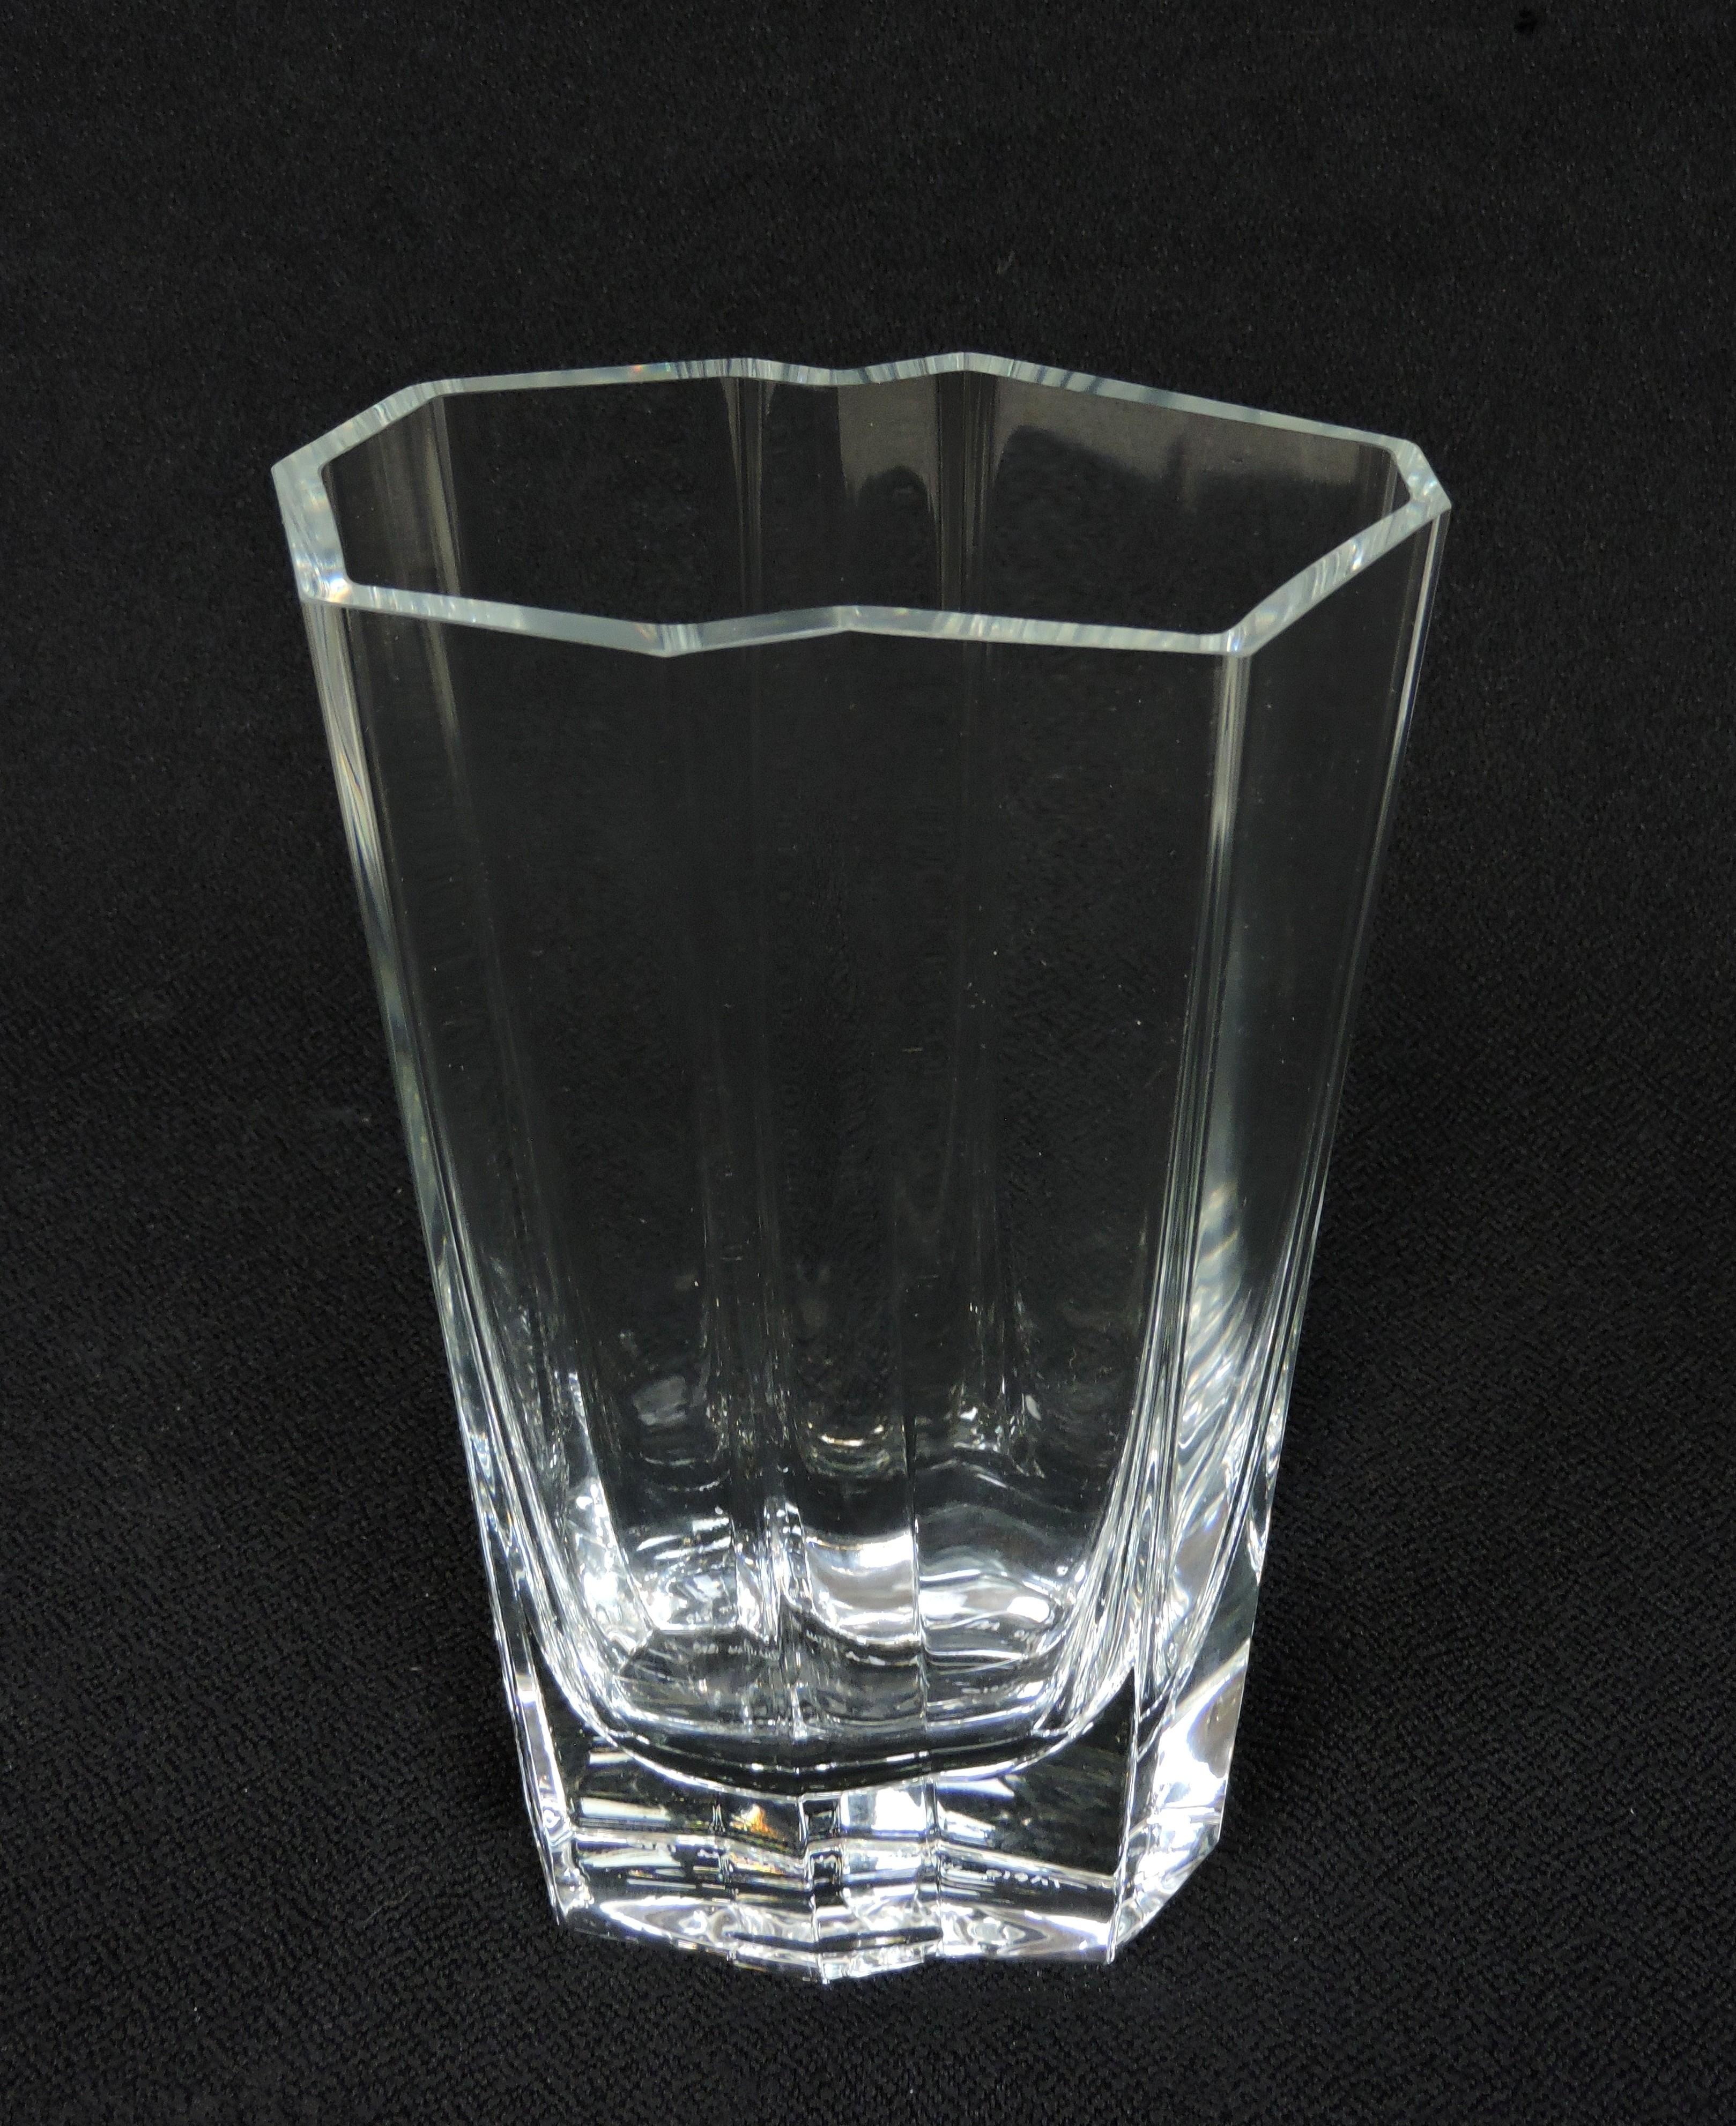 Magnifique vase Pinja conçu par Tapio Wirkkala et fabriqué en Finlande par Iittala.  Ce vase en cristal lourd et de haute qualité est soufflé à la main avec un bord asymétrique plat et poli et, à 9,25 pouces, c'est la plus grande taille de ce